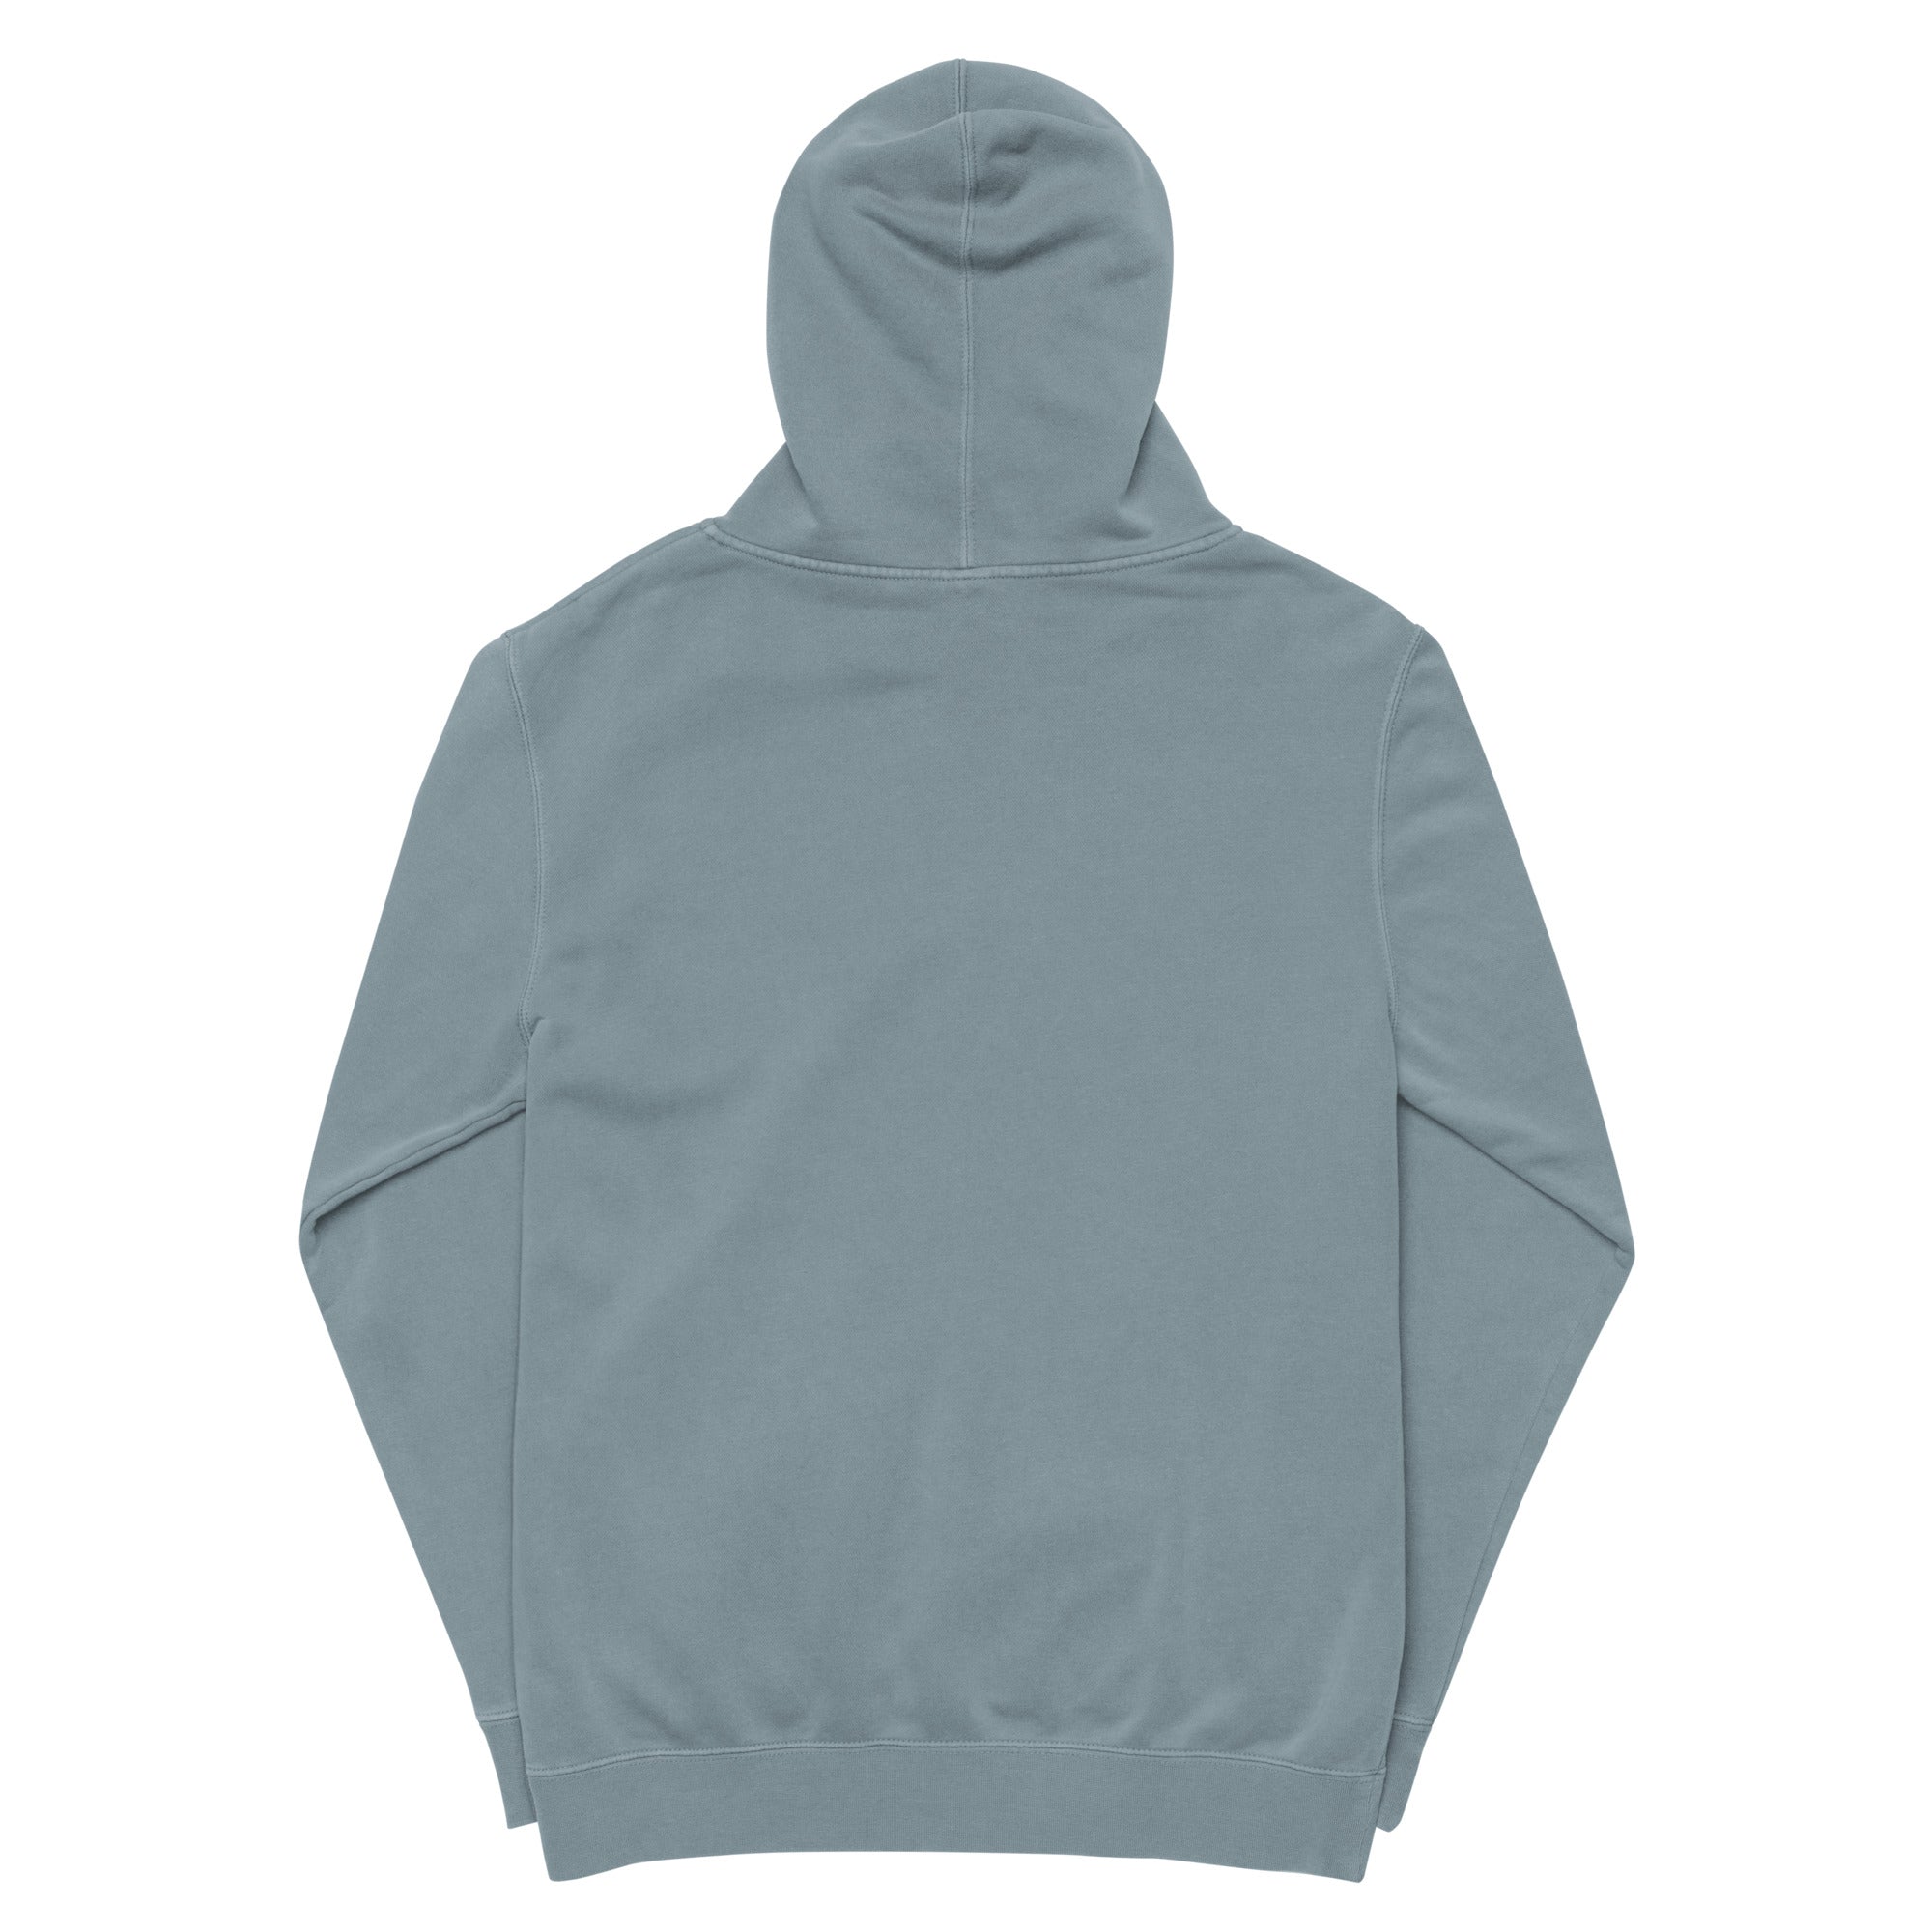 DieselDonlow hoodie